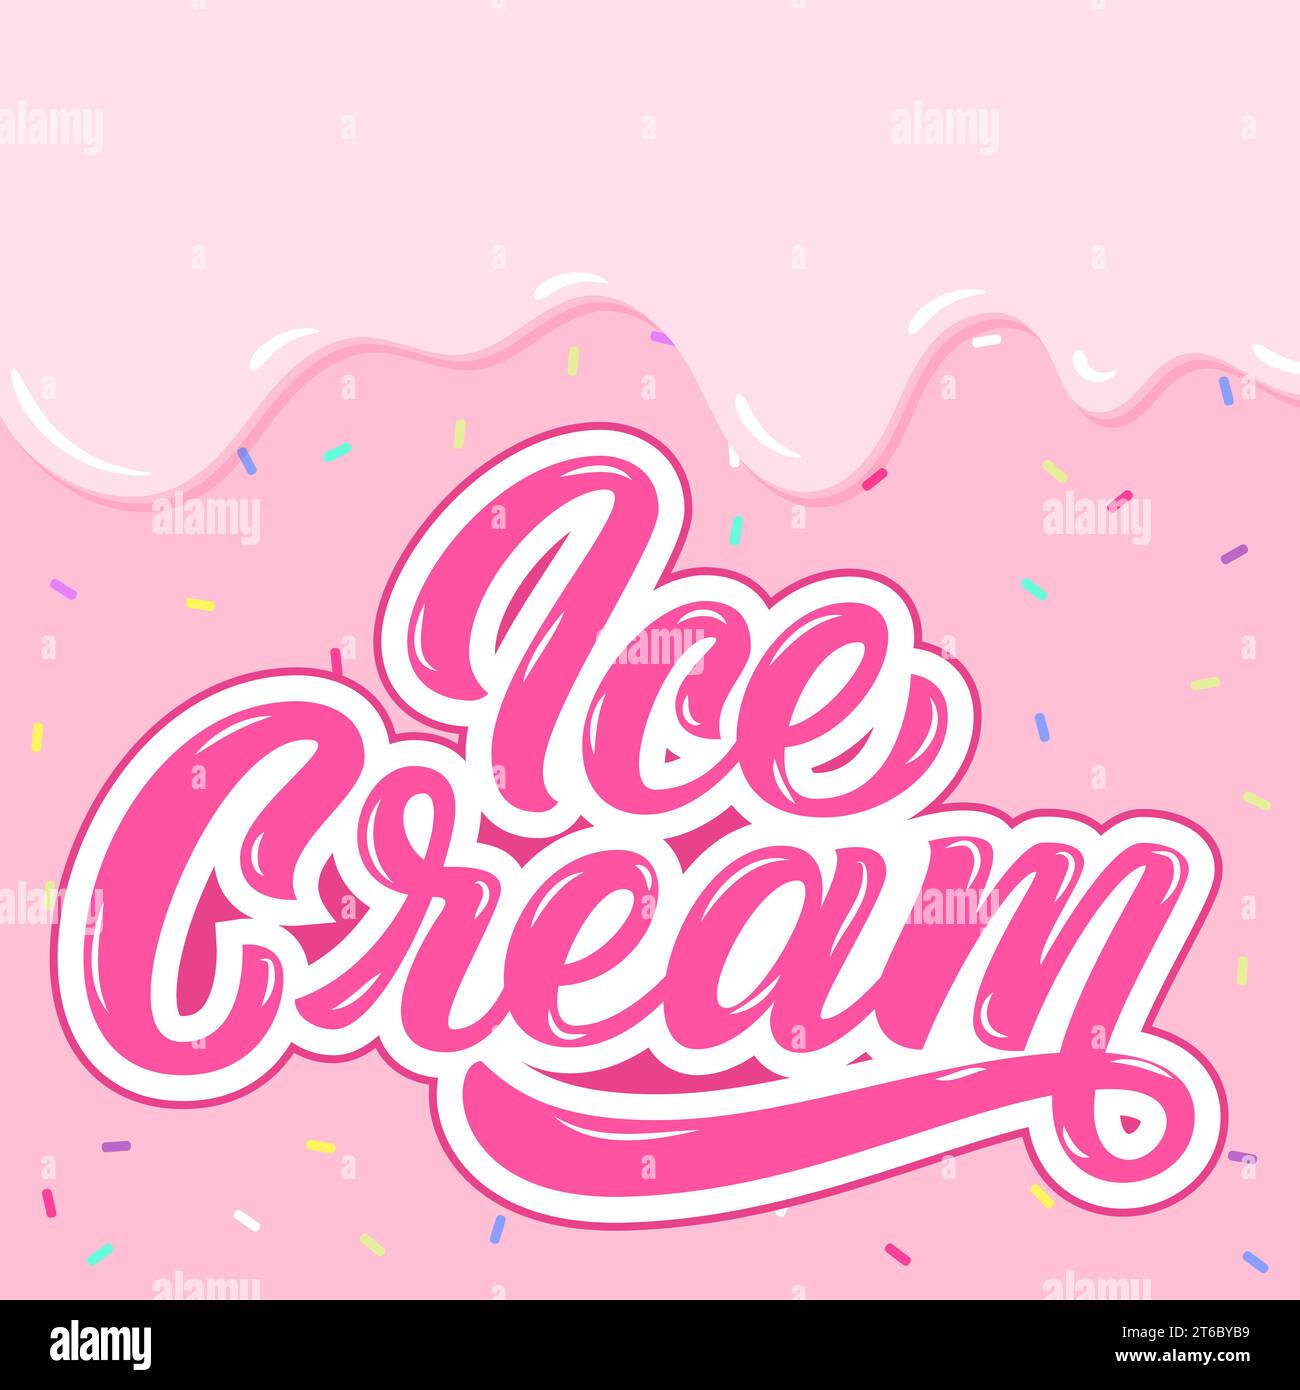 Eiscreme-Handbeschriftung, benutzerdefinierte Typografie, Zeichentrickbuchstaben auf rosa flüssigem Hintergrund. Abbildung des Vektortyps Stock Vektor